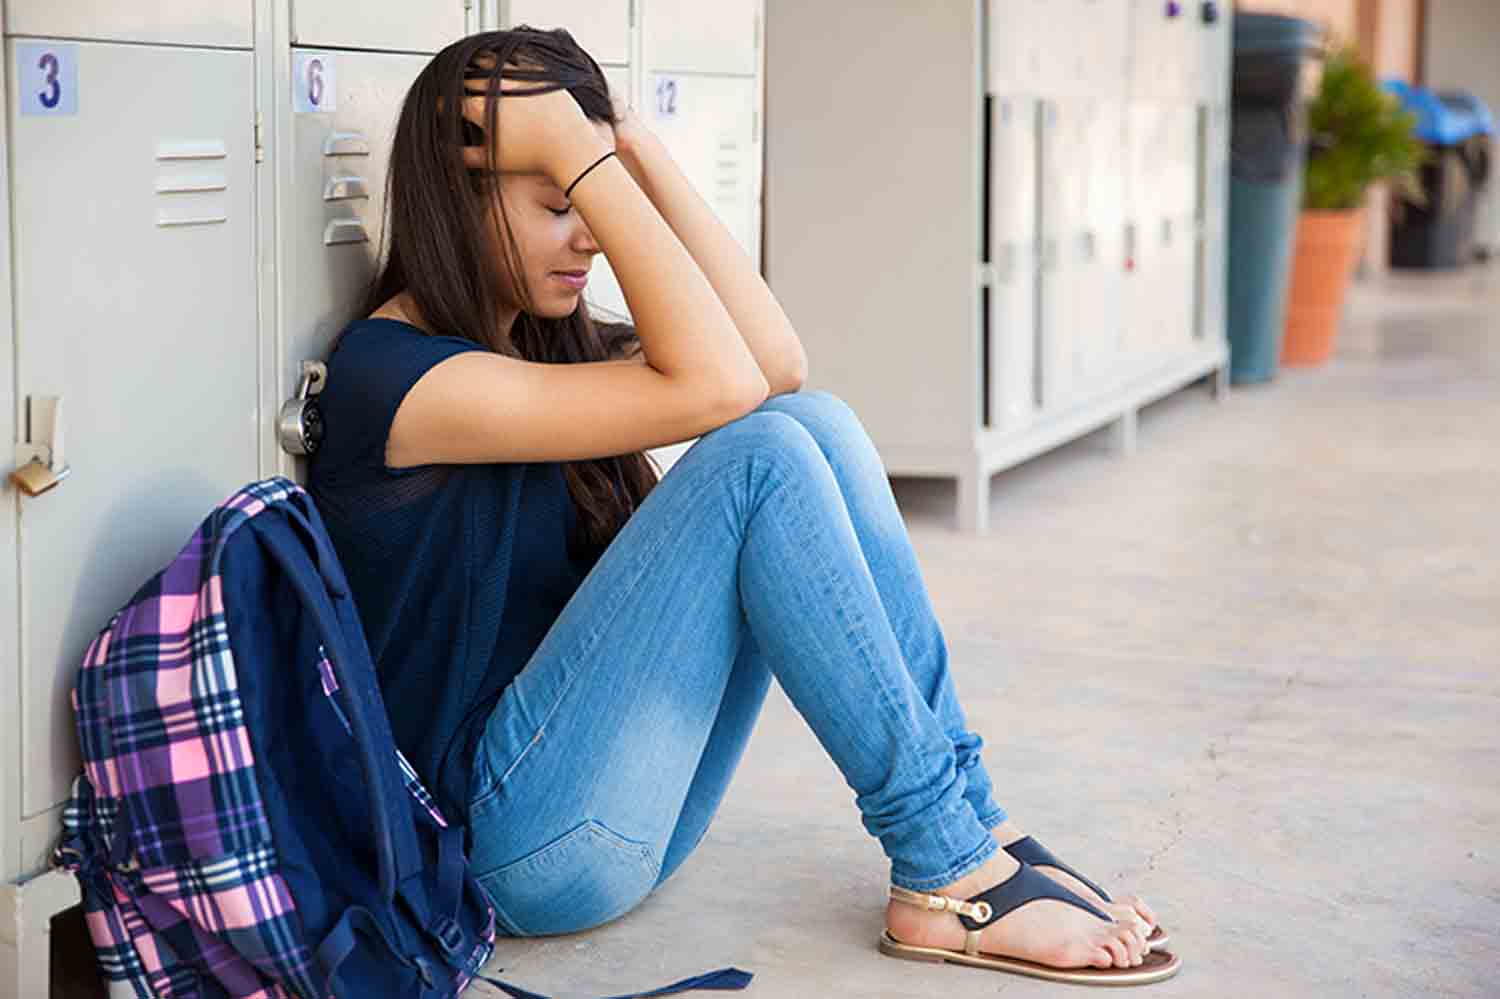 Une adolescente est assise par terre en se tenant les mains. Elles souffre de décrochage scolaire